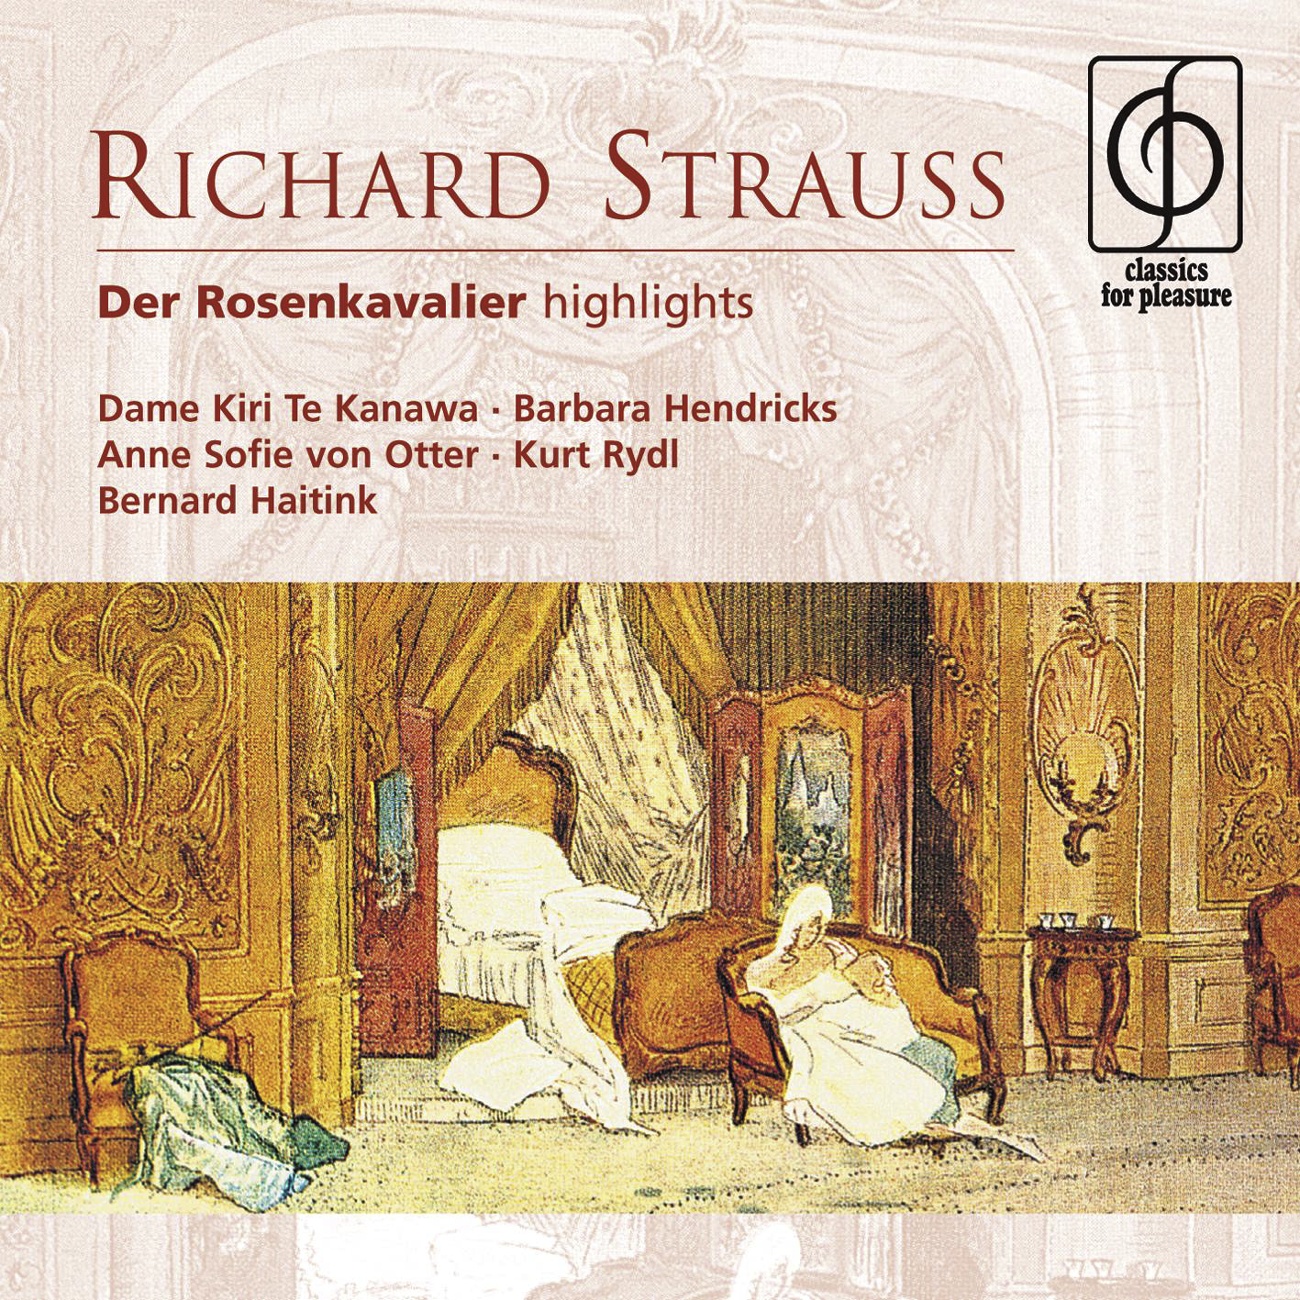 Richard Strauss: Der Rosenkavalier (highlights)